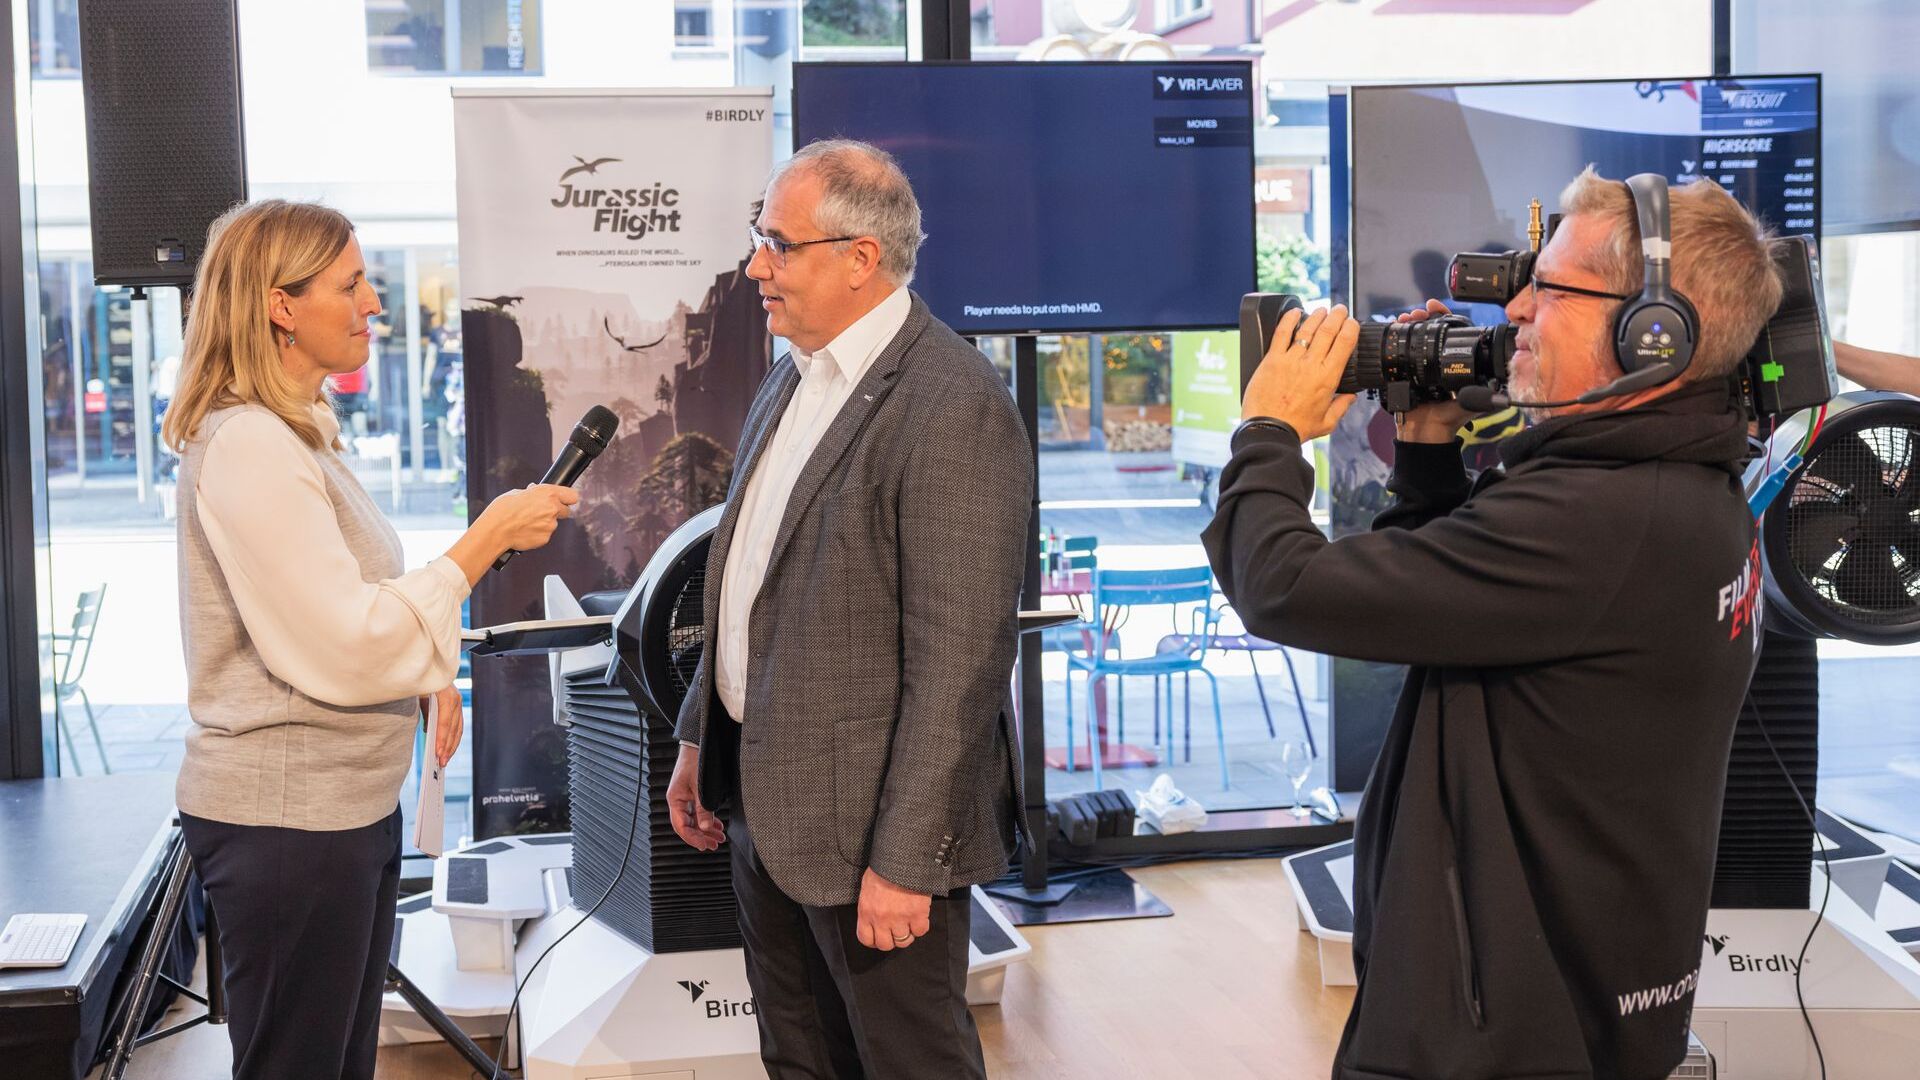 „Дигиталтаг Вадуз“, који је Музеј уметности главног града Кнежевине Лихтенштајн дочекао у суботу 6. новембра 2021, изазвао је ентузијазам јавности и говорника у аналогији са „Швајцарским дигиталним даном“ следећег 10. дана: интервју са Манфредом Бишофом, градоначелником главног града